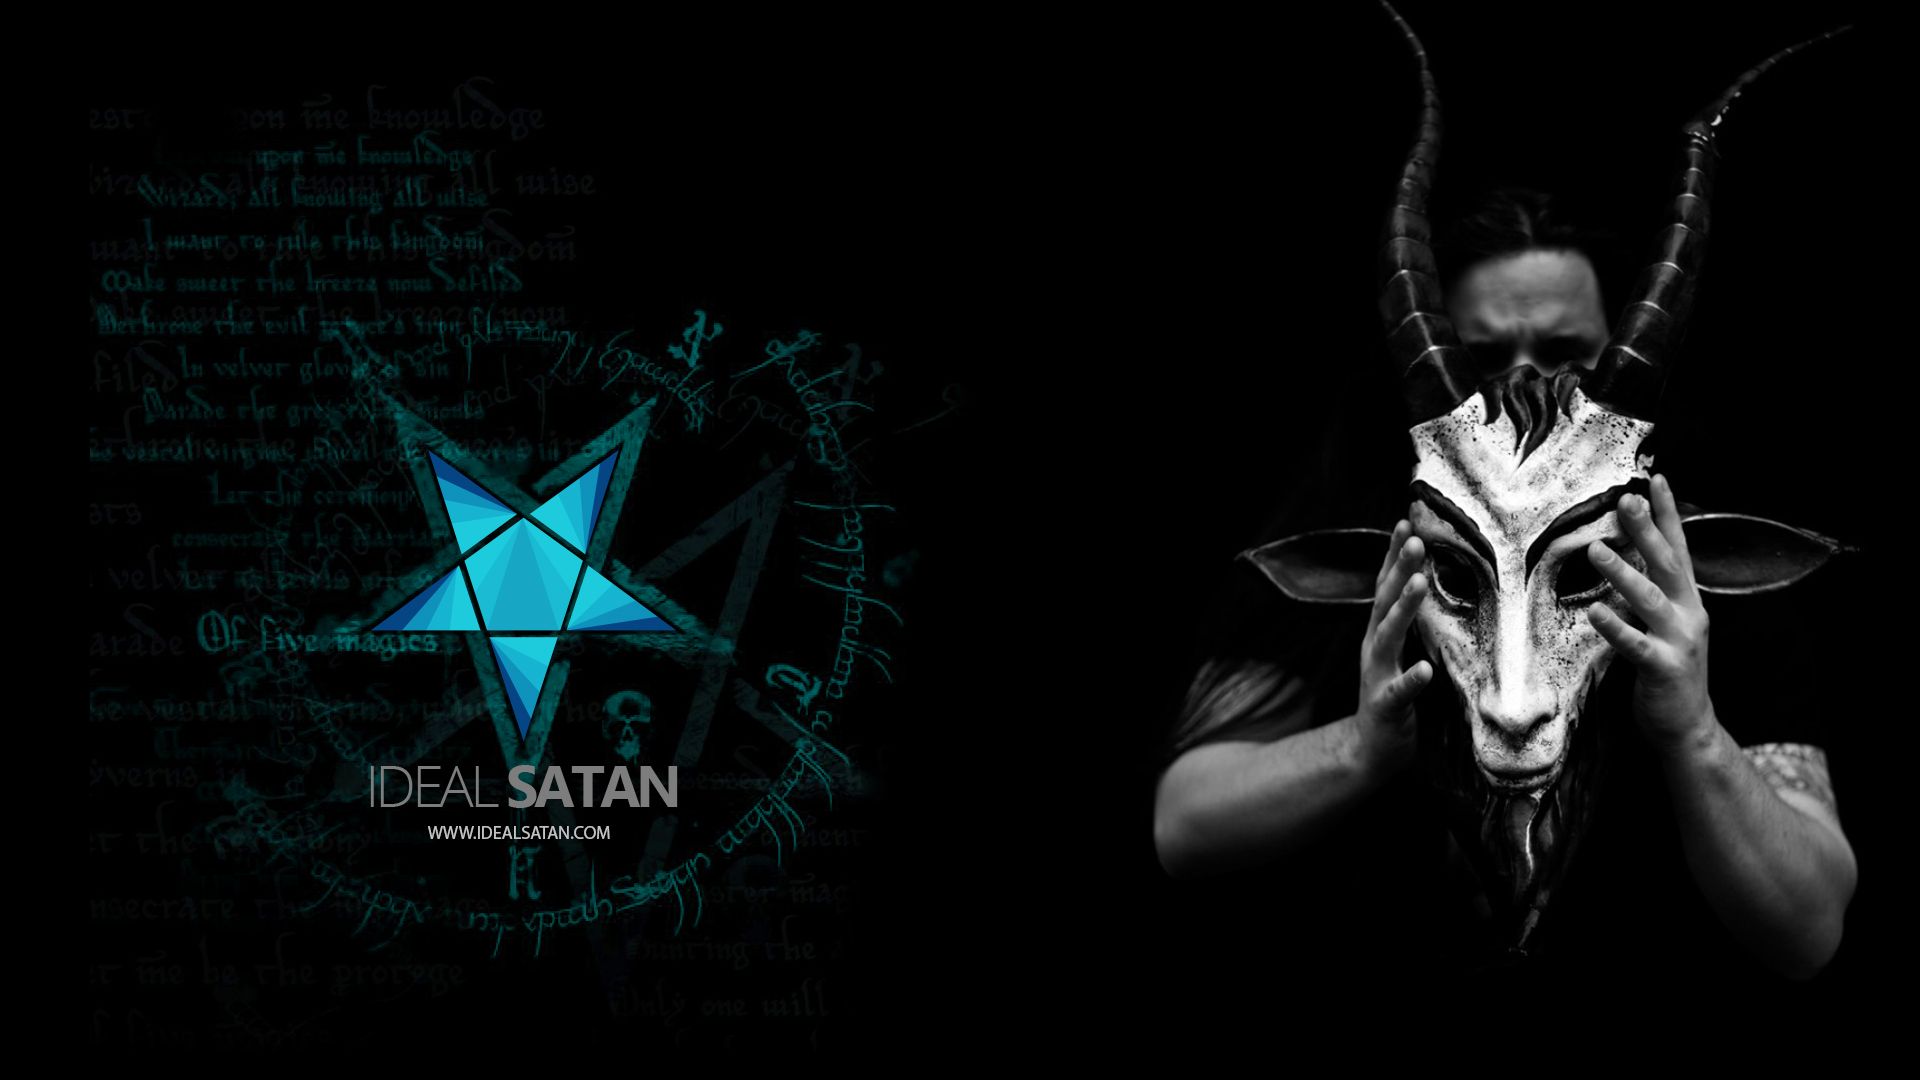 Ideal Satan Satanic Community Church of Satan Lucifer